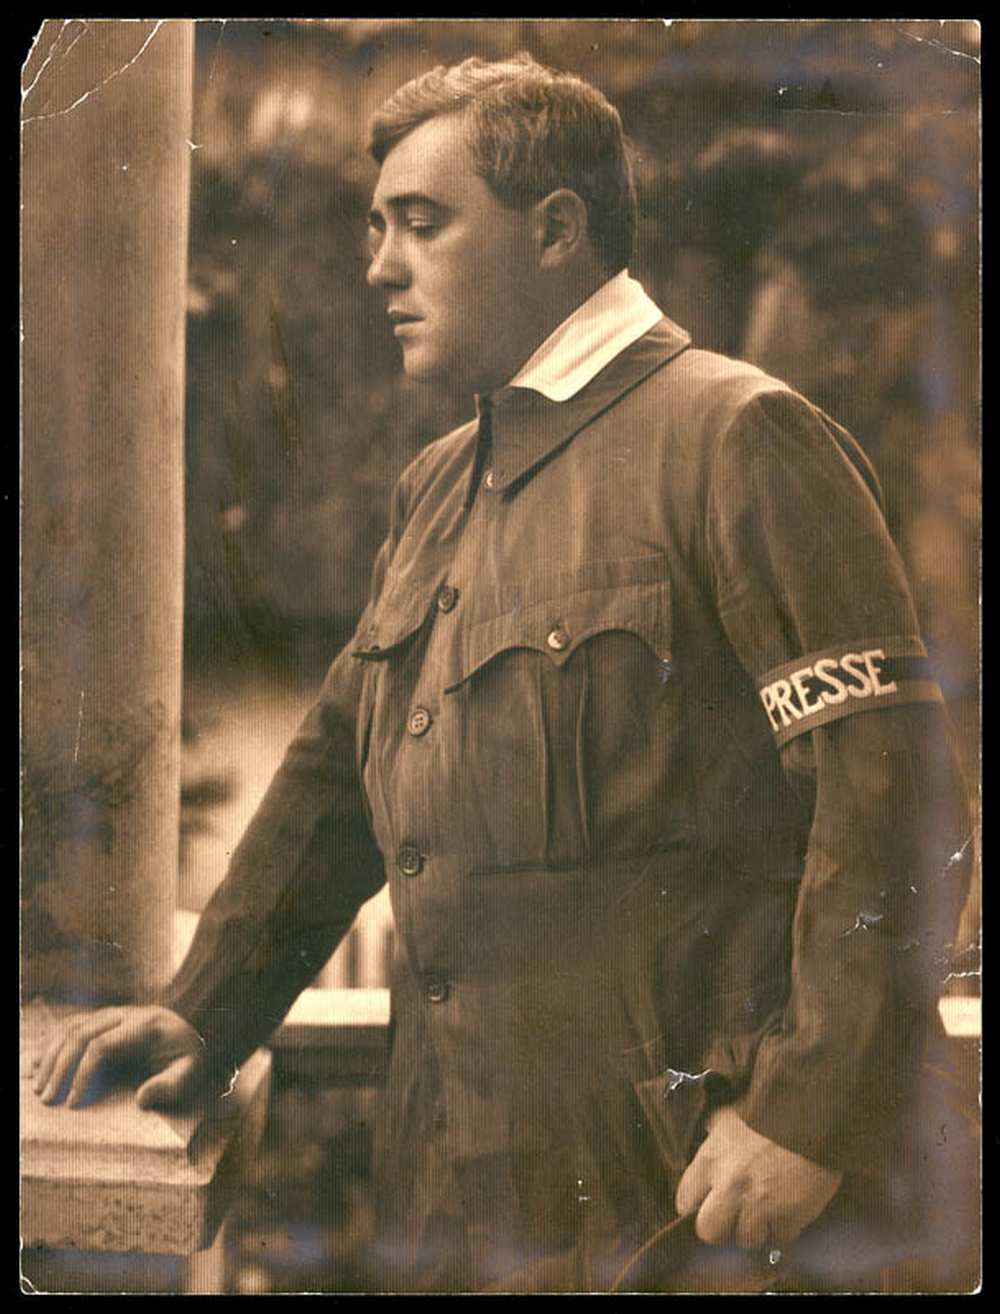 Molnár Ferenc mint haditudósító az I. világháború idején (ismeretlen fényképész felvétele) é. n. – Színháztörténeti és Zeneműtár: KB 838/1964